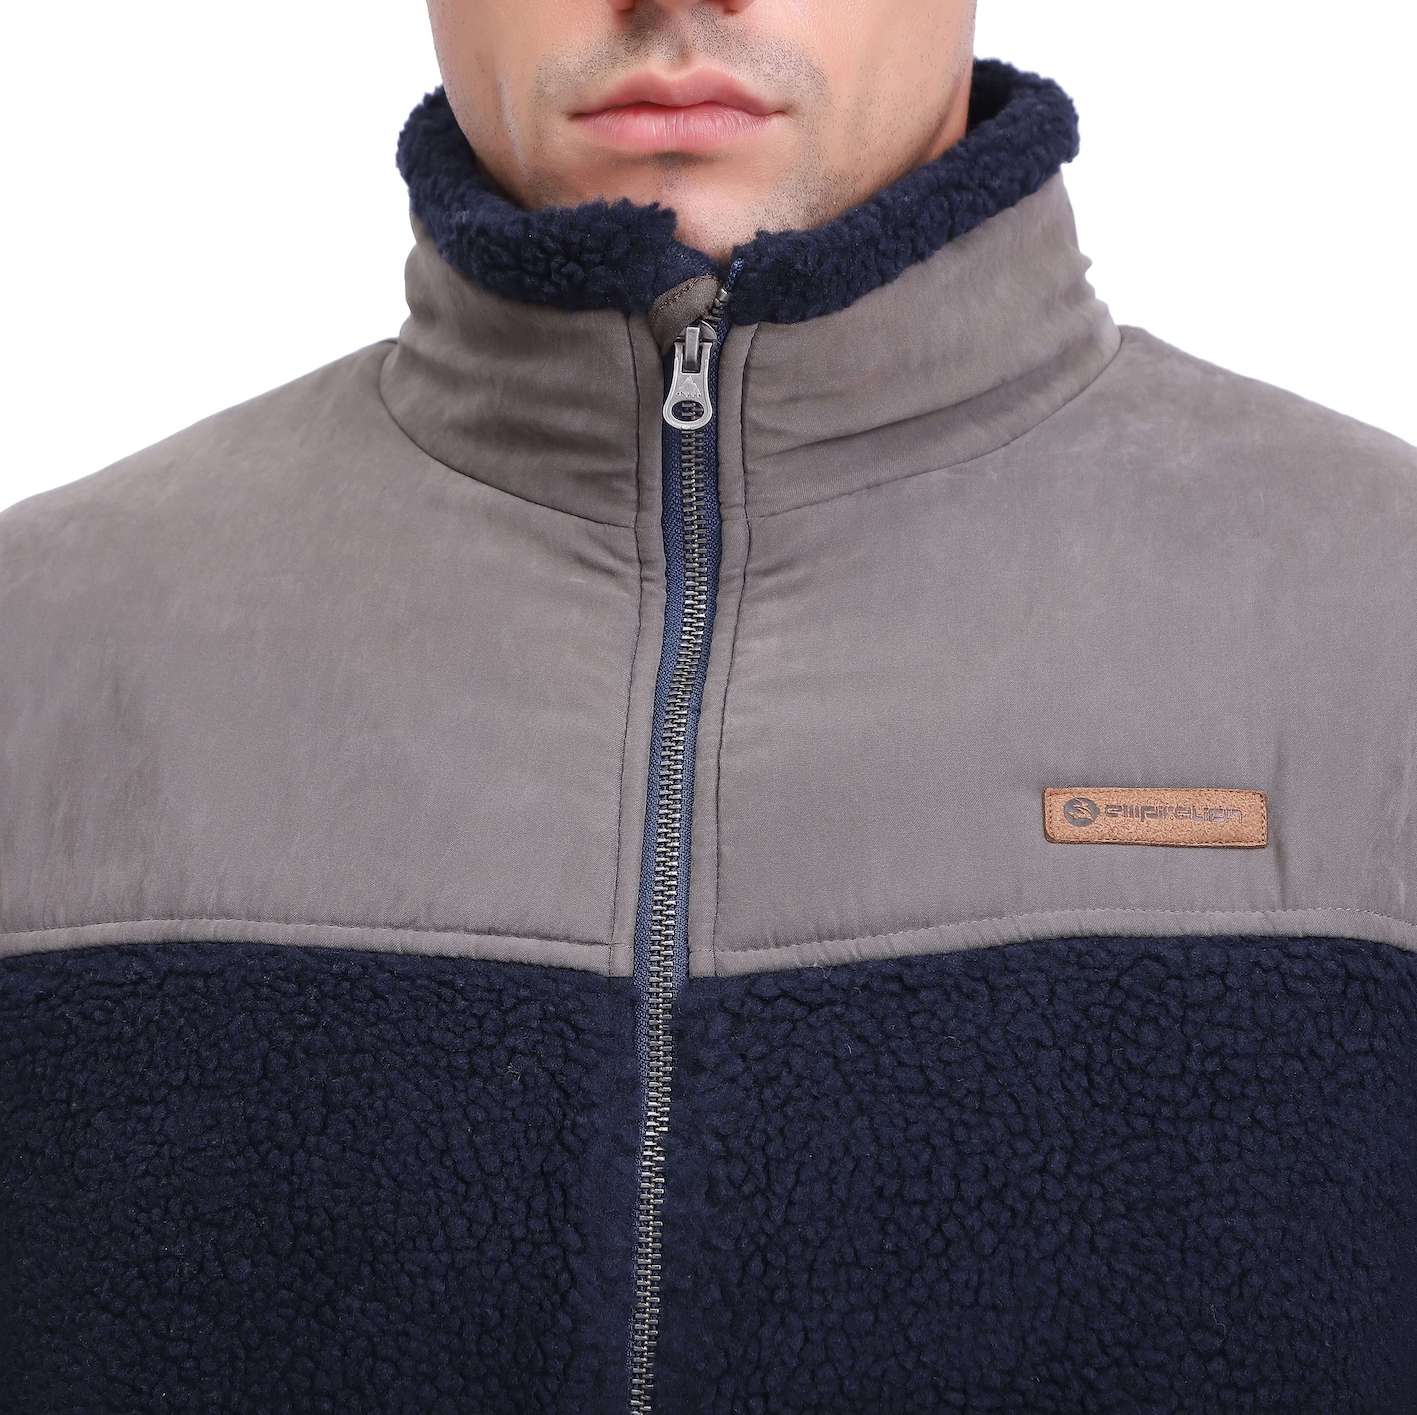 Men's Warm Military Tactical Sport Heavy Fleece Hoodie Jacket